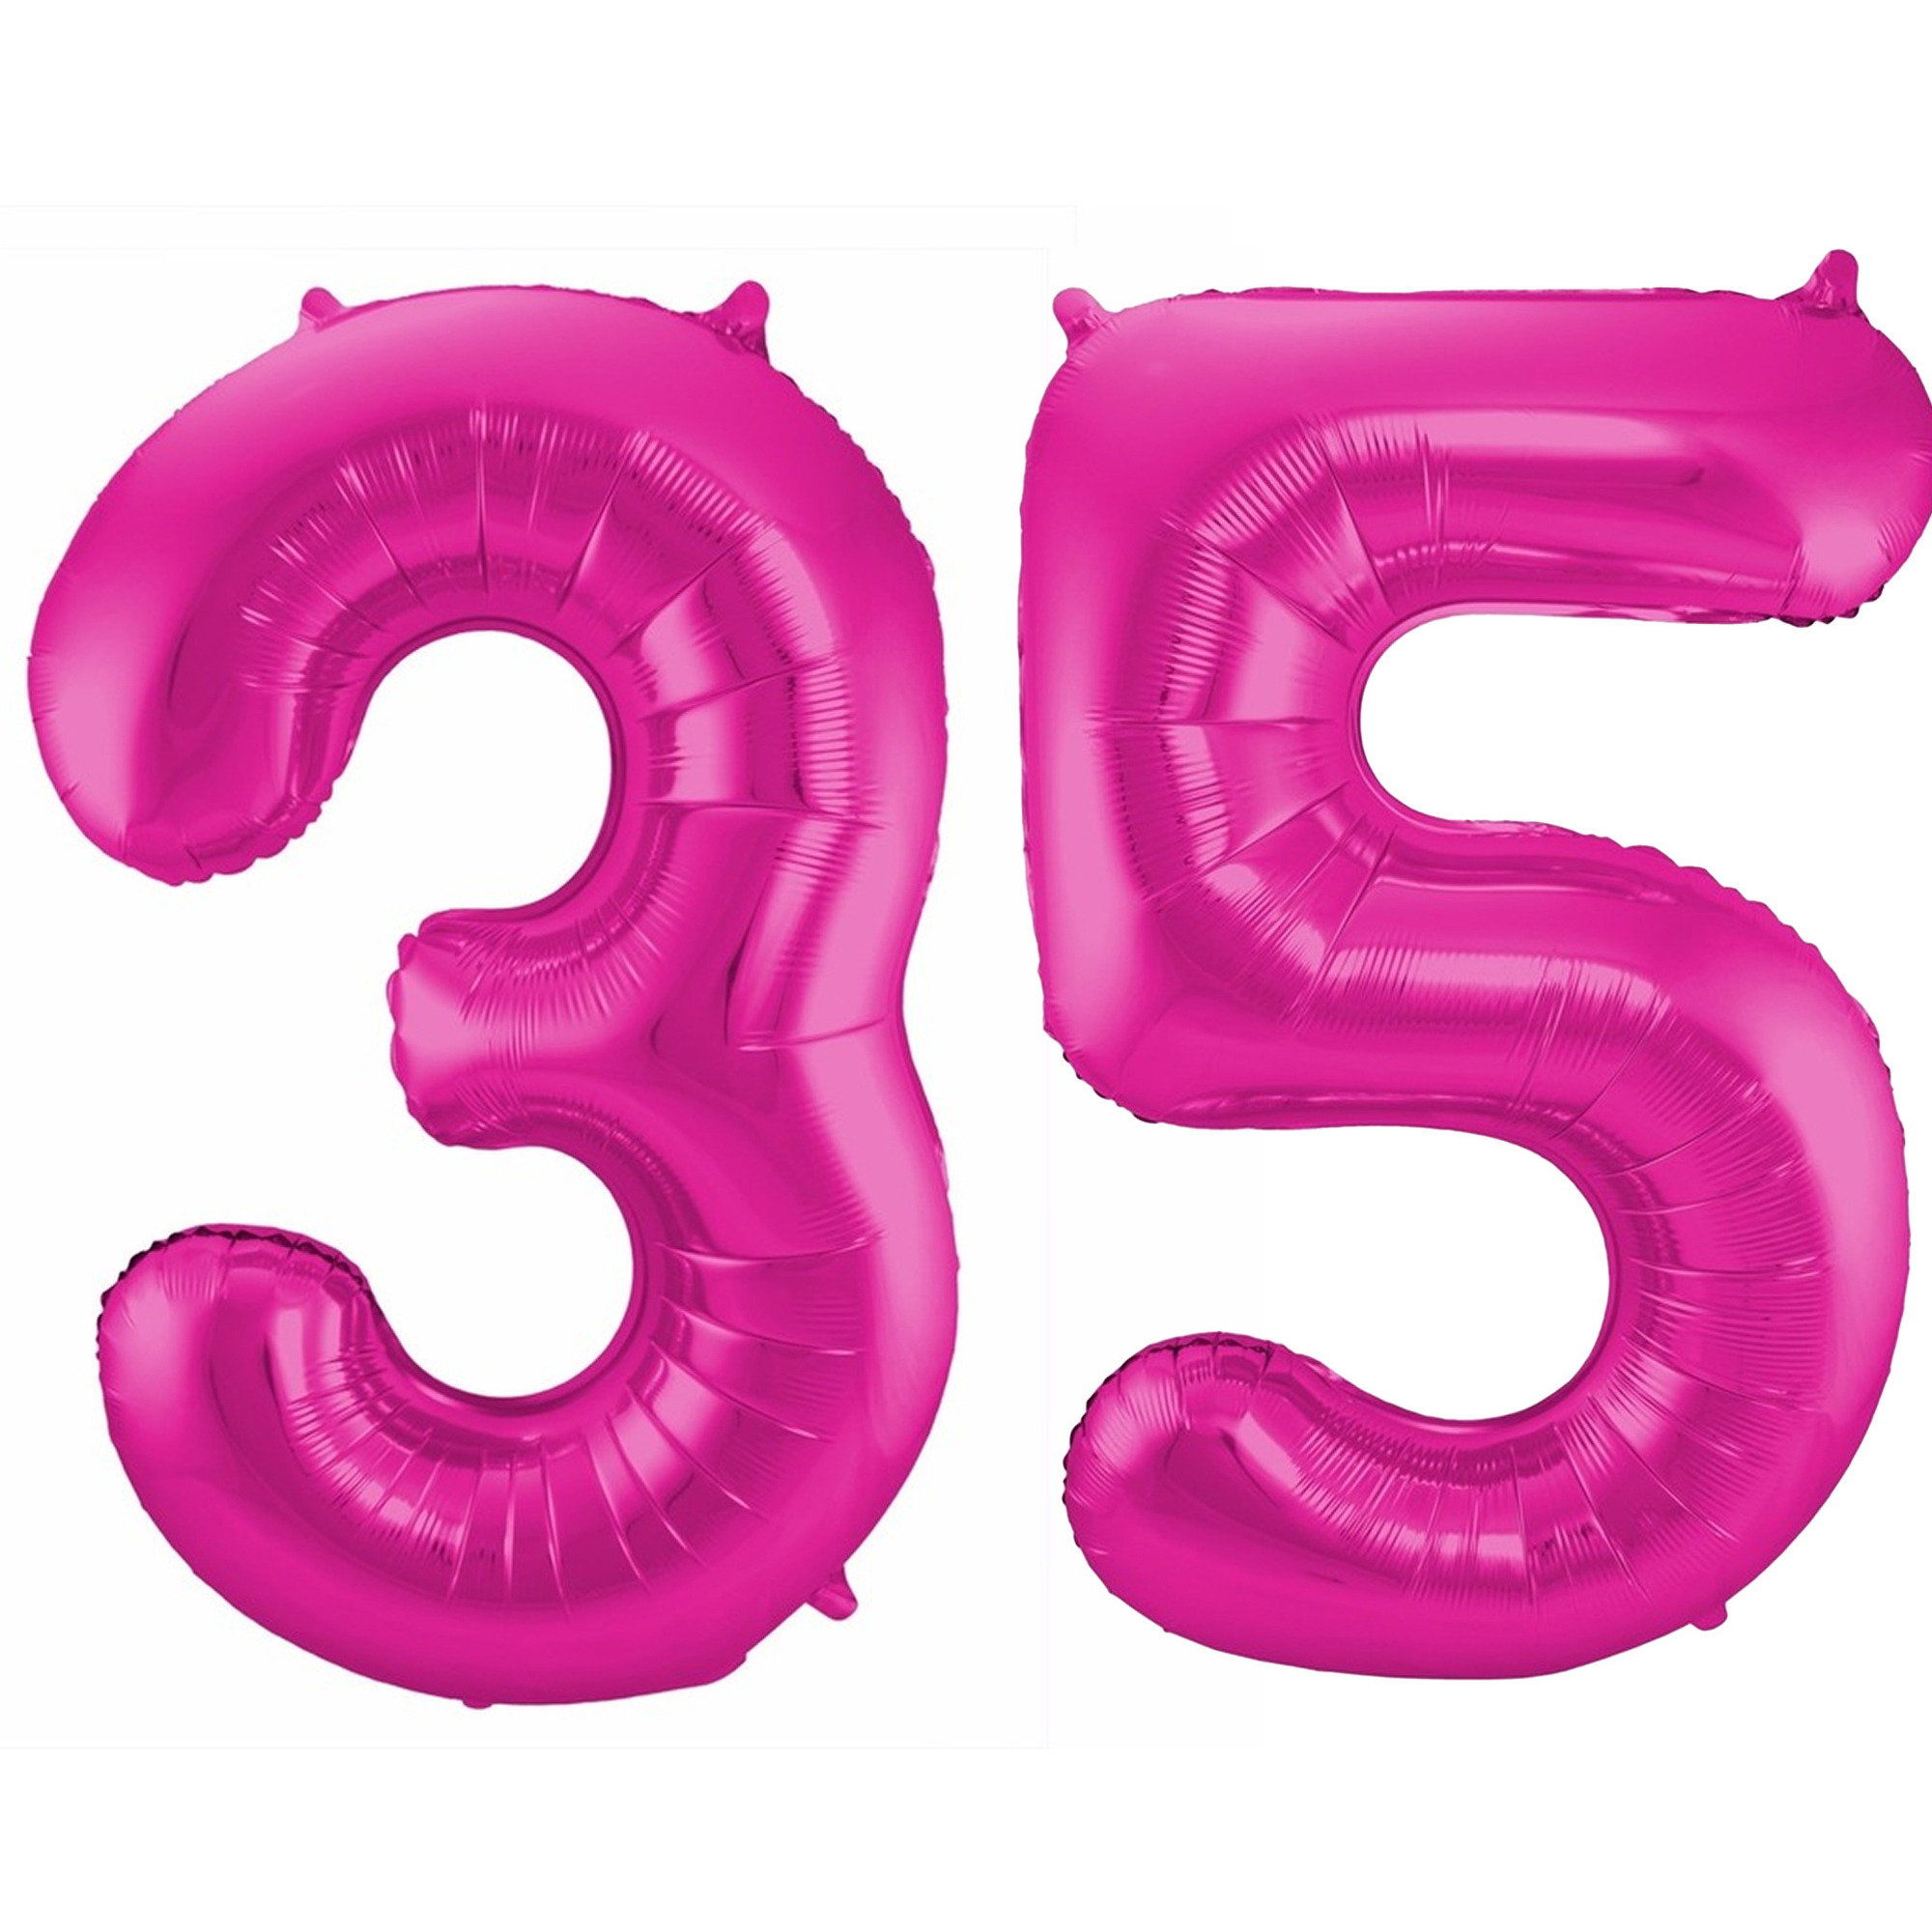 Cijfer ballonnen opblaas Verjaardag versiering 35 jaar 85 cm roze